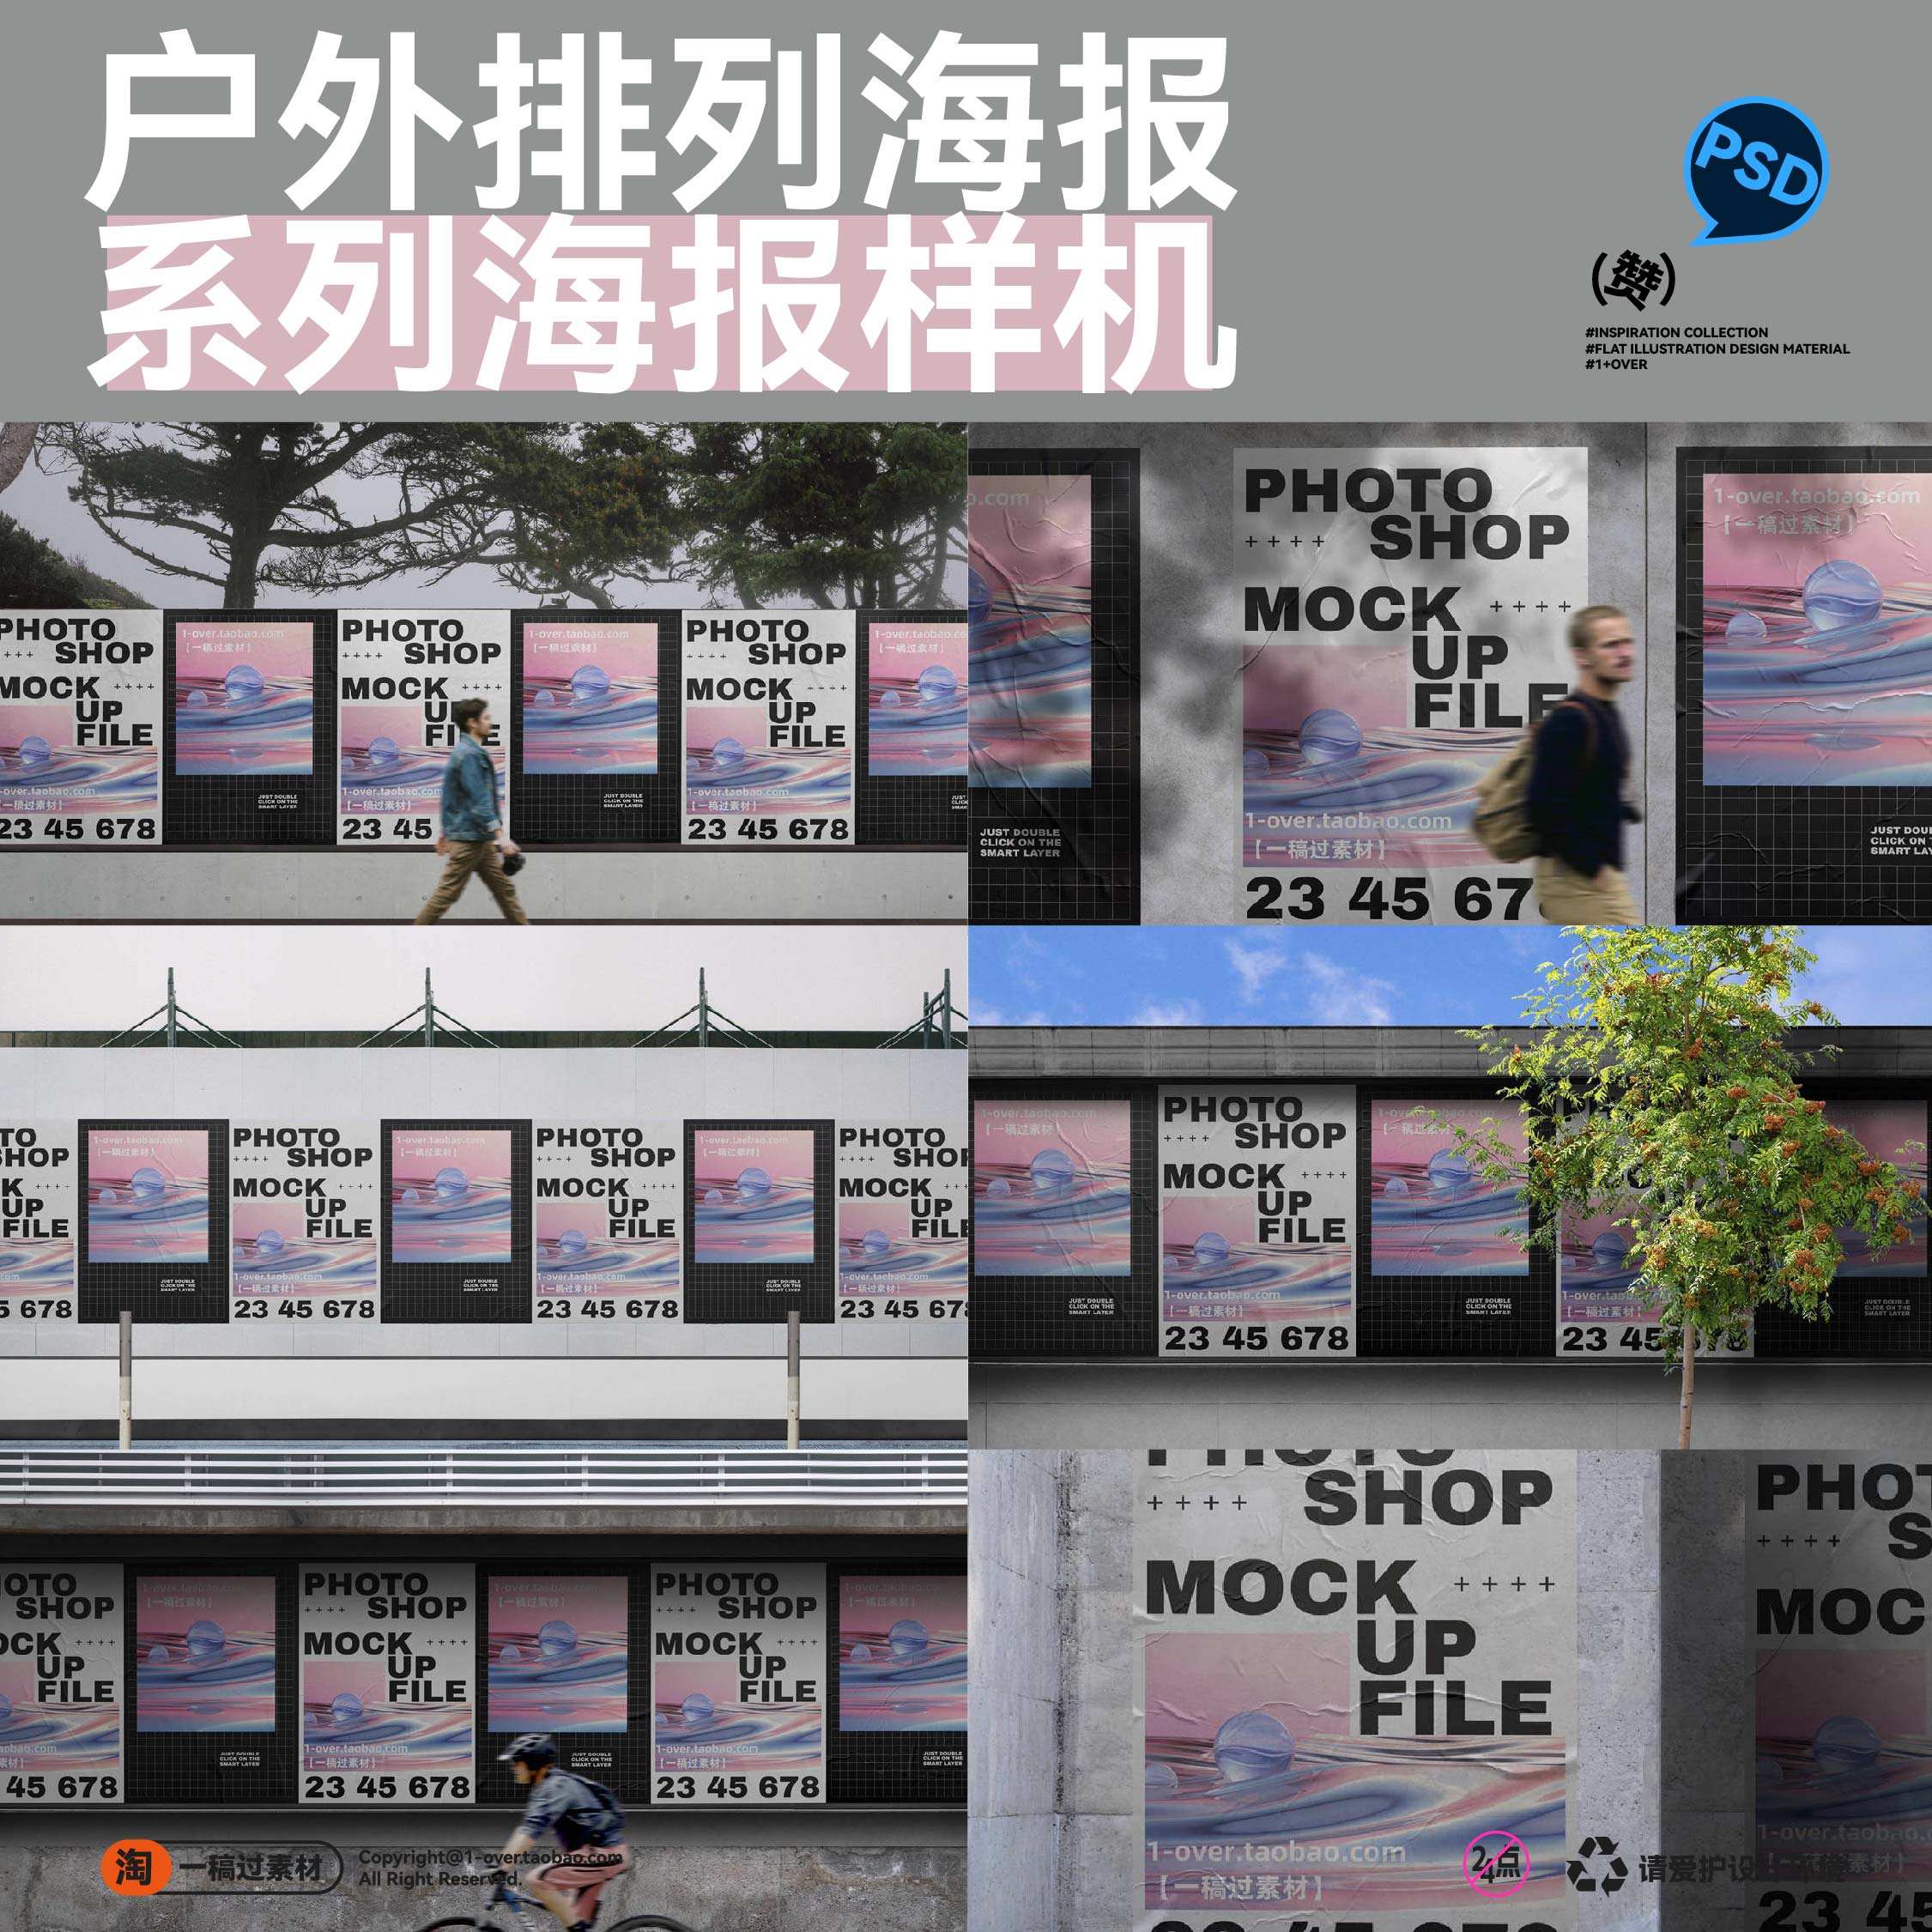 户外街头场景墙体围挡系列海报招贴广告样机PSD品牌展示效果素材